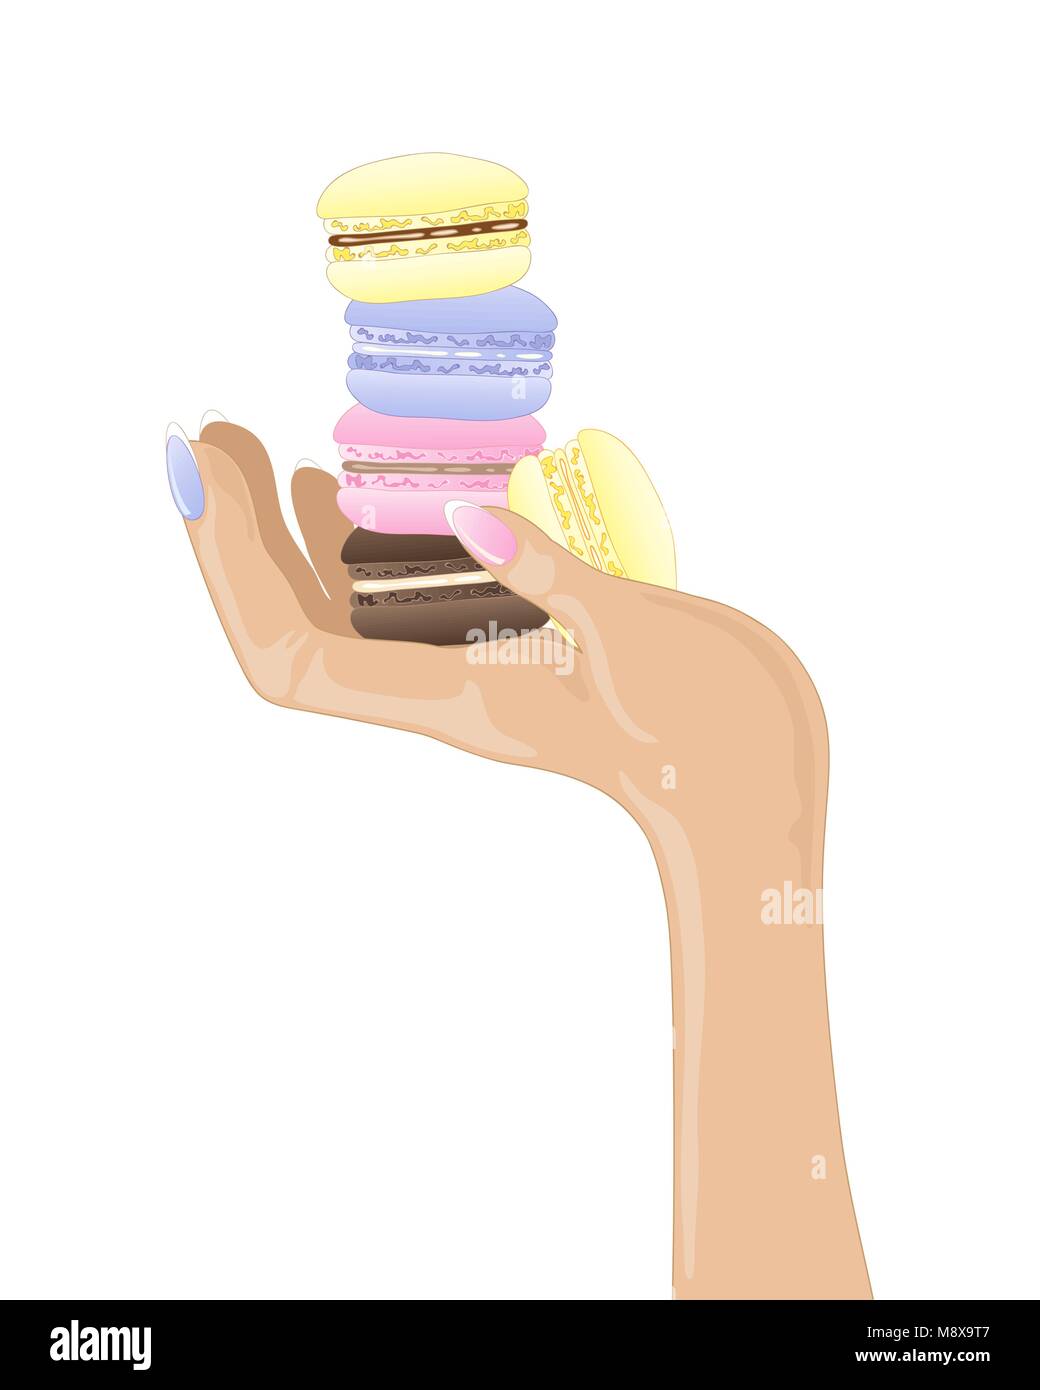 Un vecteur illustration en eps 10 format d'une femme main tenant des gâteries aux macarons dans différentes saveurs sur fond blanc Illustration de Vecteur